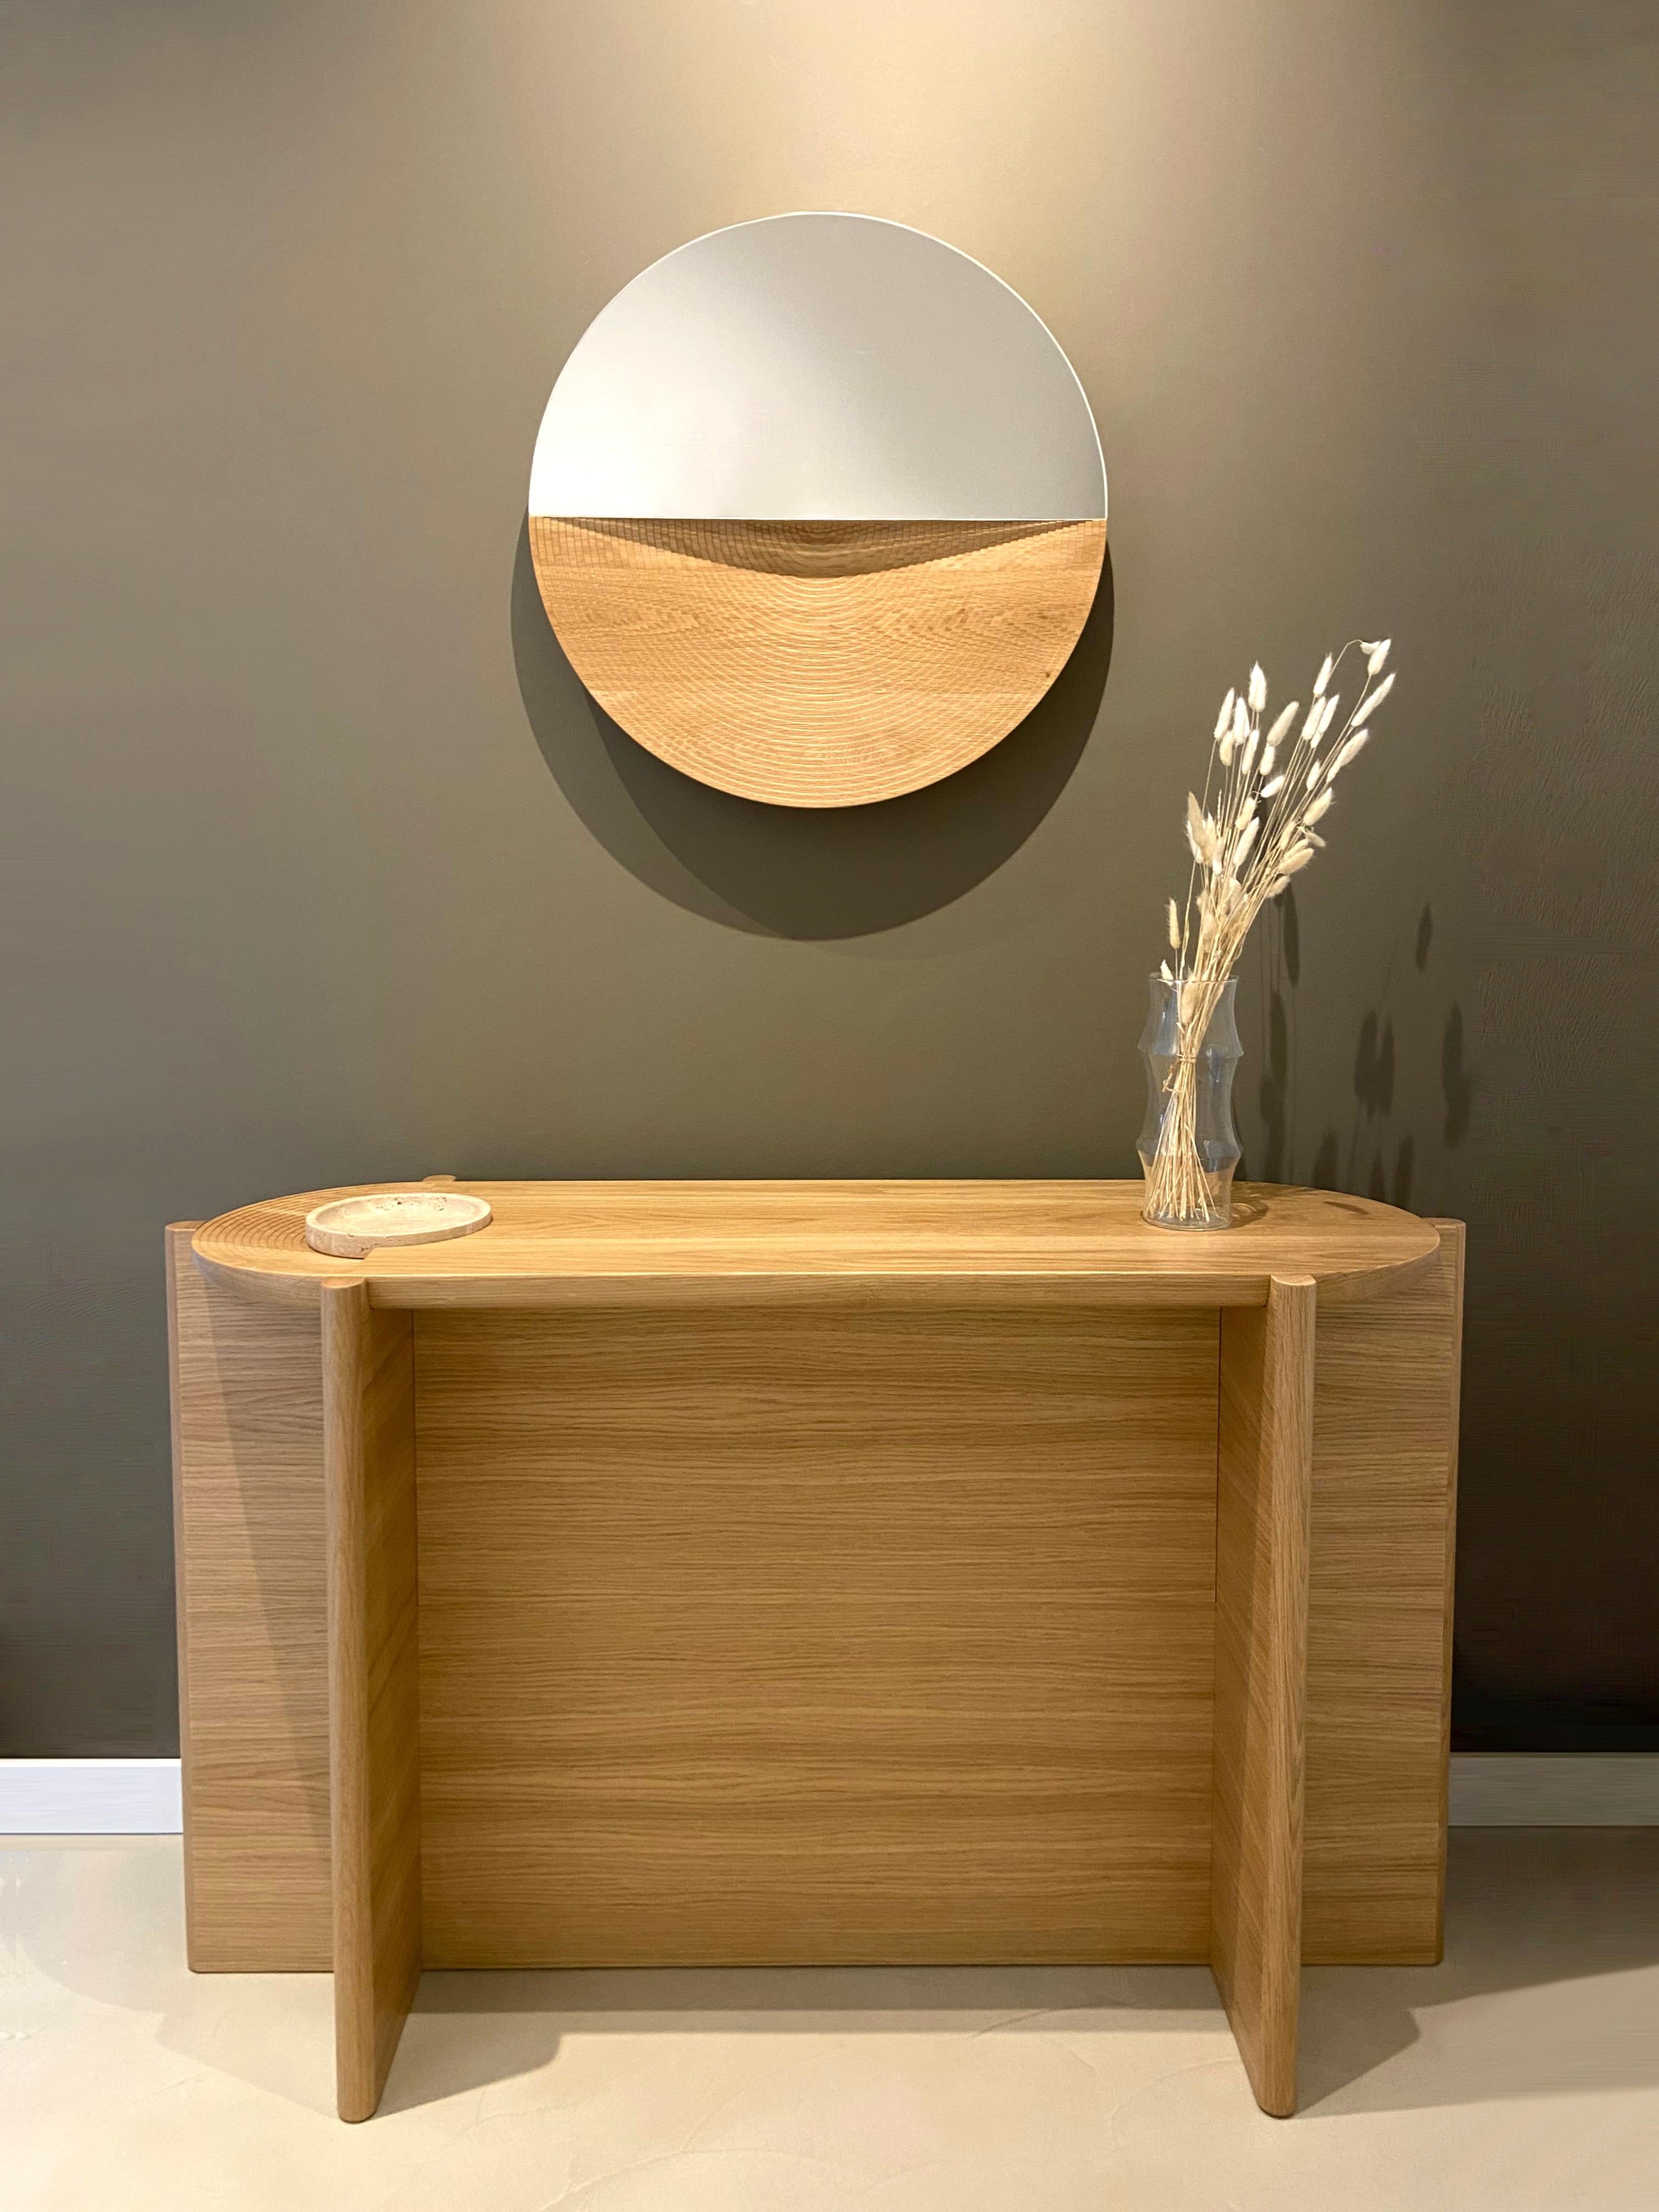 La table console Arkhe est une gracieuse combinaison de fonctionnalité, de simplicité et de posture sculpturale. La beauté naturelle du chêne et du travertin, l'artisanat exquis et l'inspiration provenant des magnifiques amphithéâtres d'autrefois